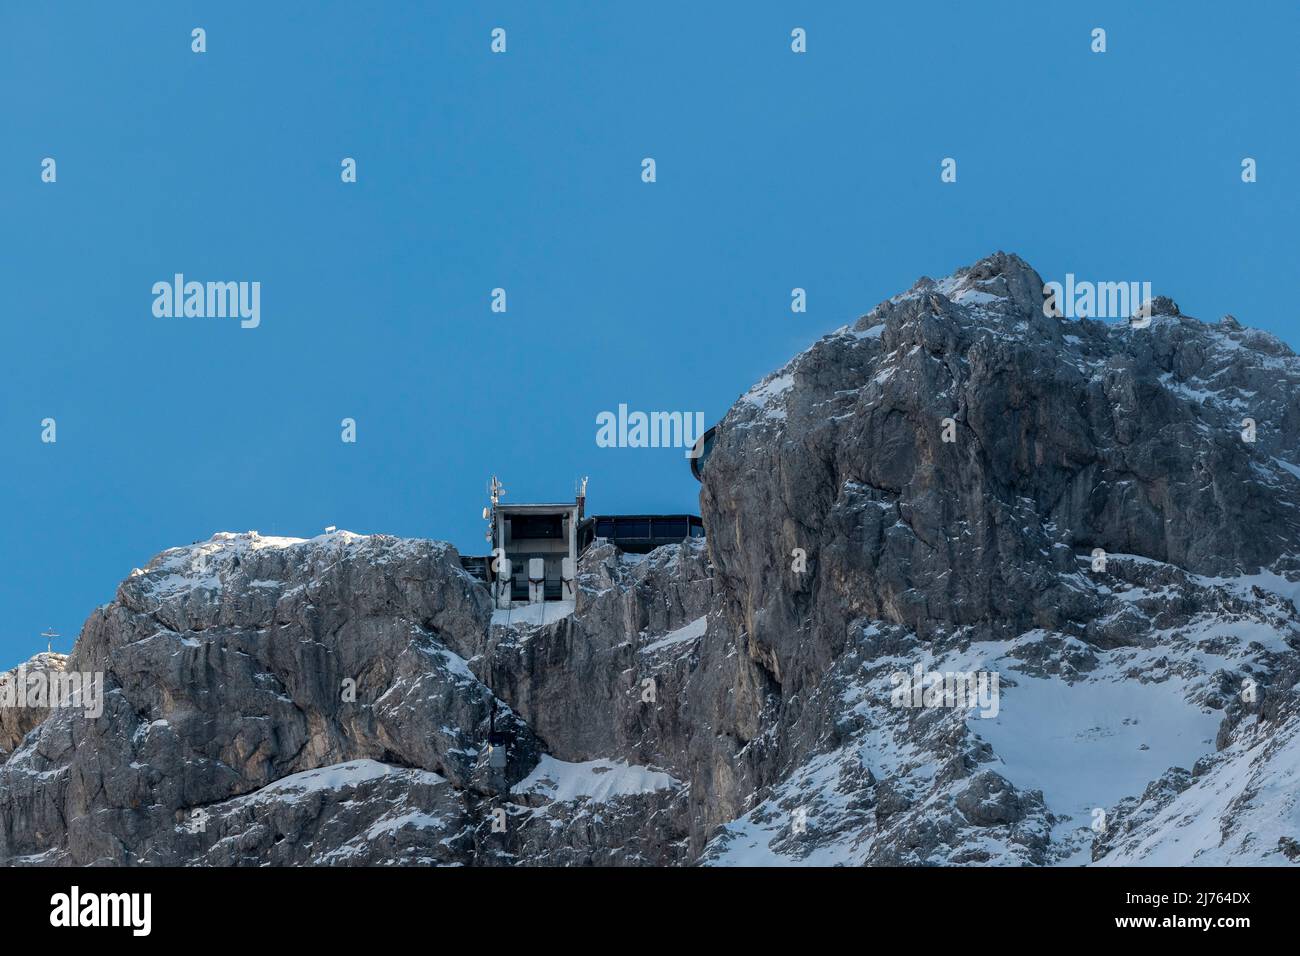 Die Bergstation der Karwendelbahn im Winter mit Schnee, Eis und harten Felsen. Eine Hütte auf dem Weg zum Gebäude. Stockfoto